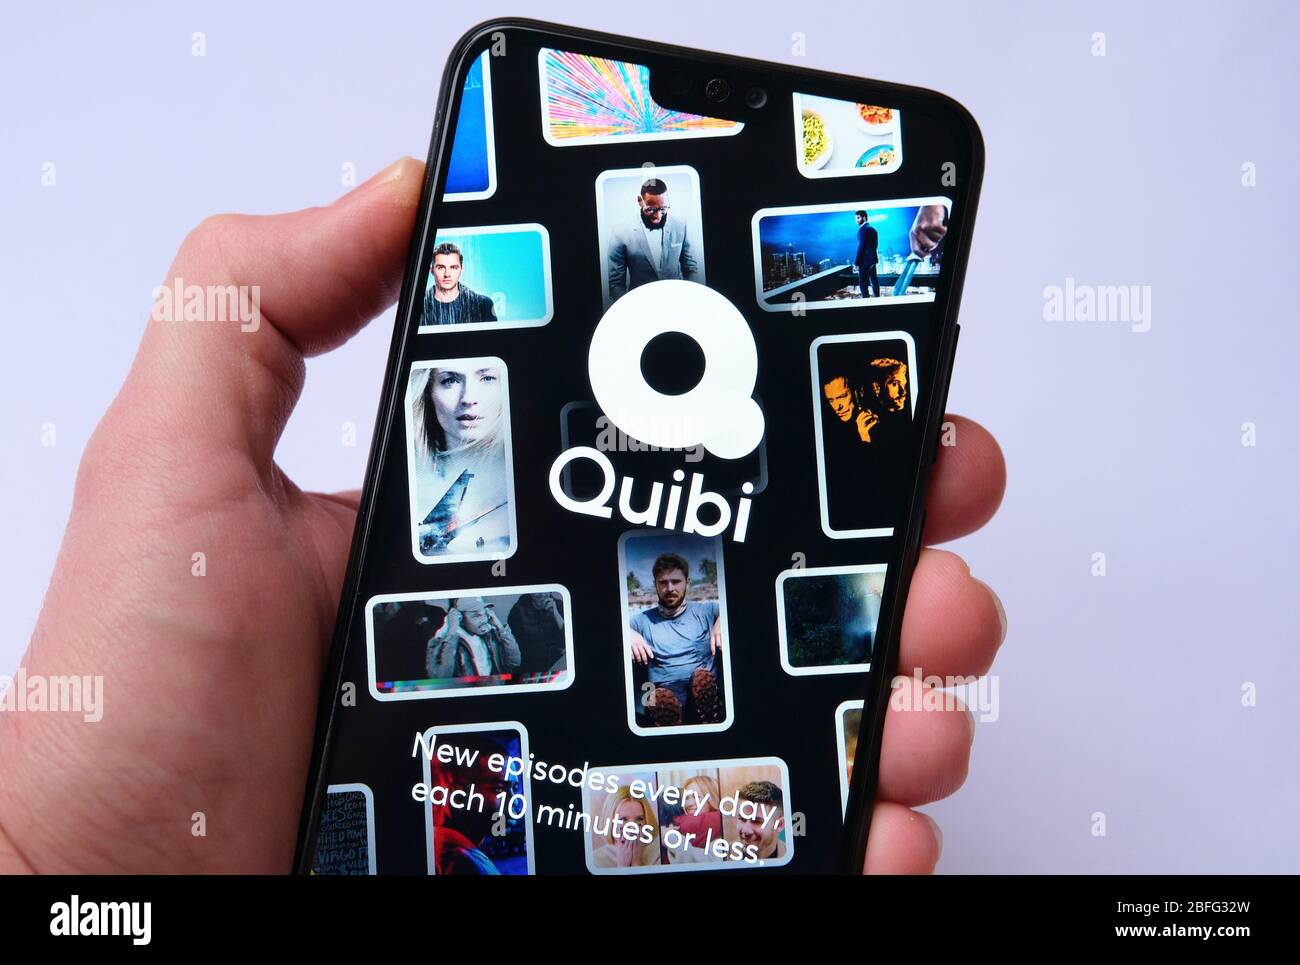 Stone / Royaume-Uni - 18 avril 2020: Écran de connexion de l'application Quibi sur le smartphone. Quibi est une nouvelle plate-forme de diffusion vidéo courte, comperitor to TikTok Banque D'Images